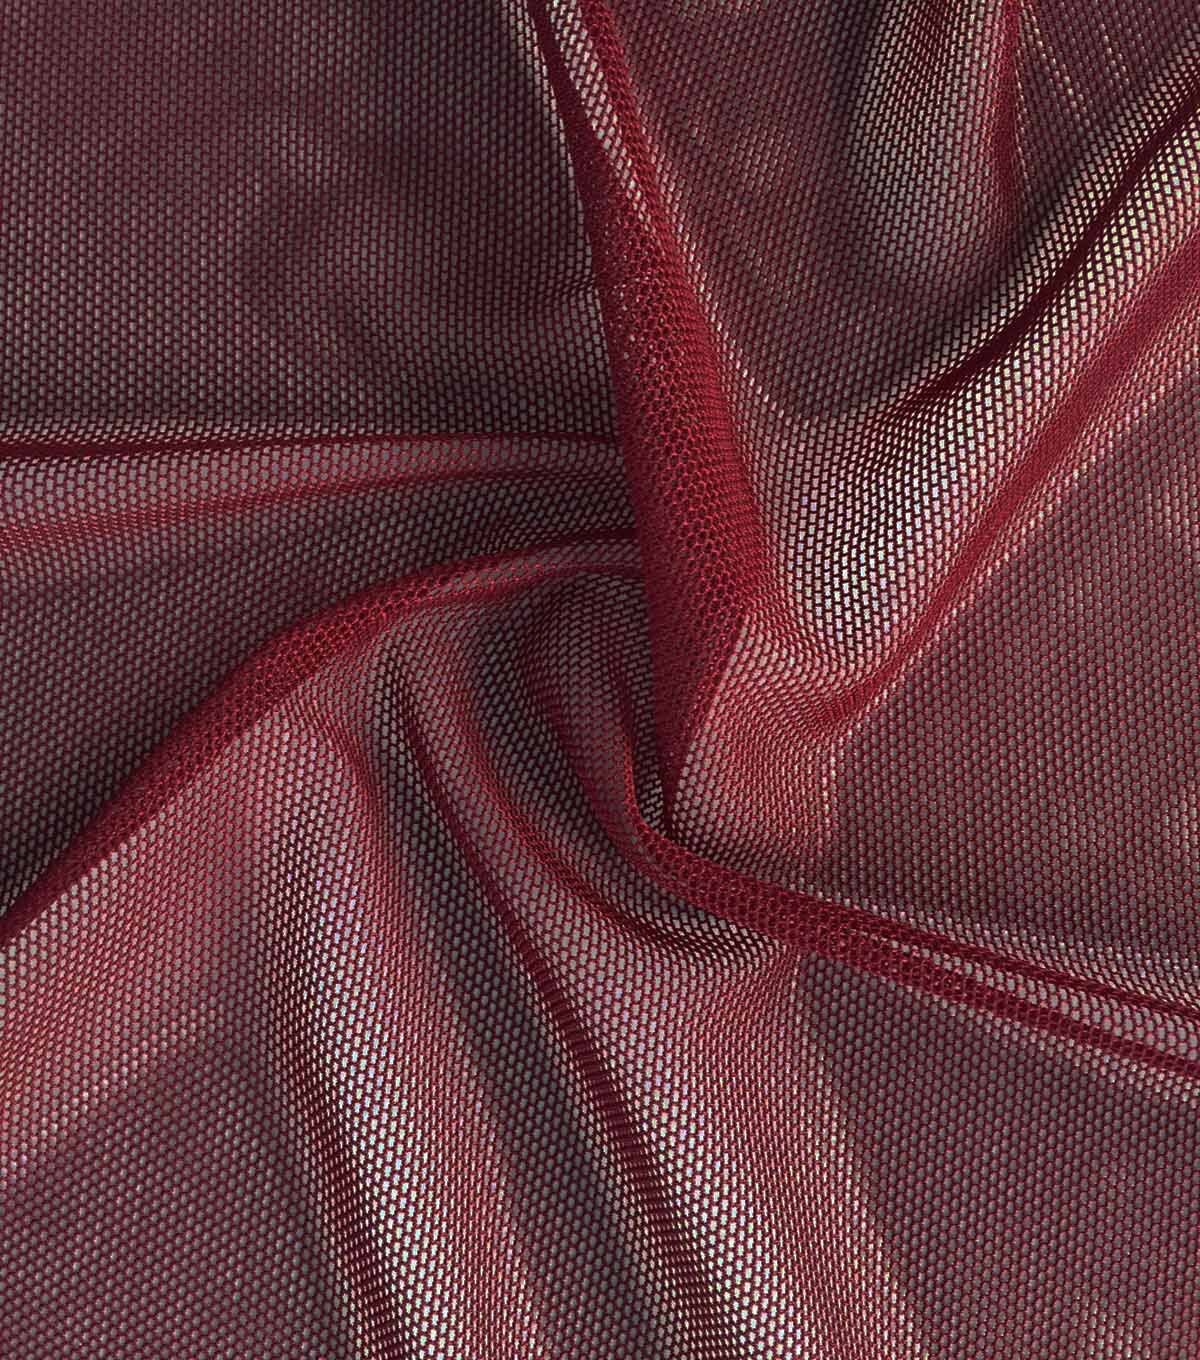 stretch mesh fabric joann